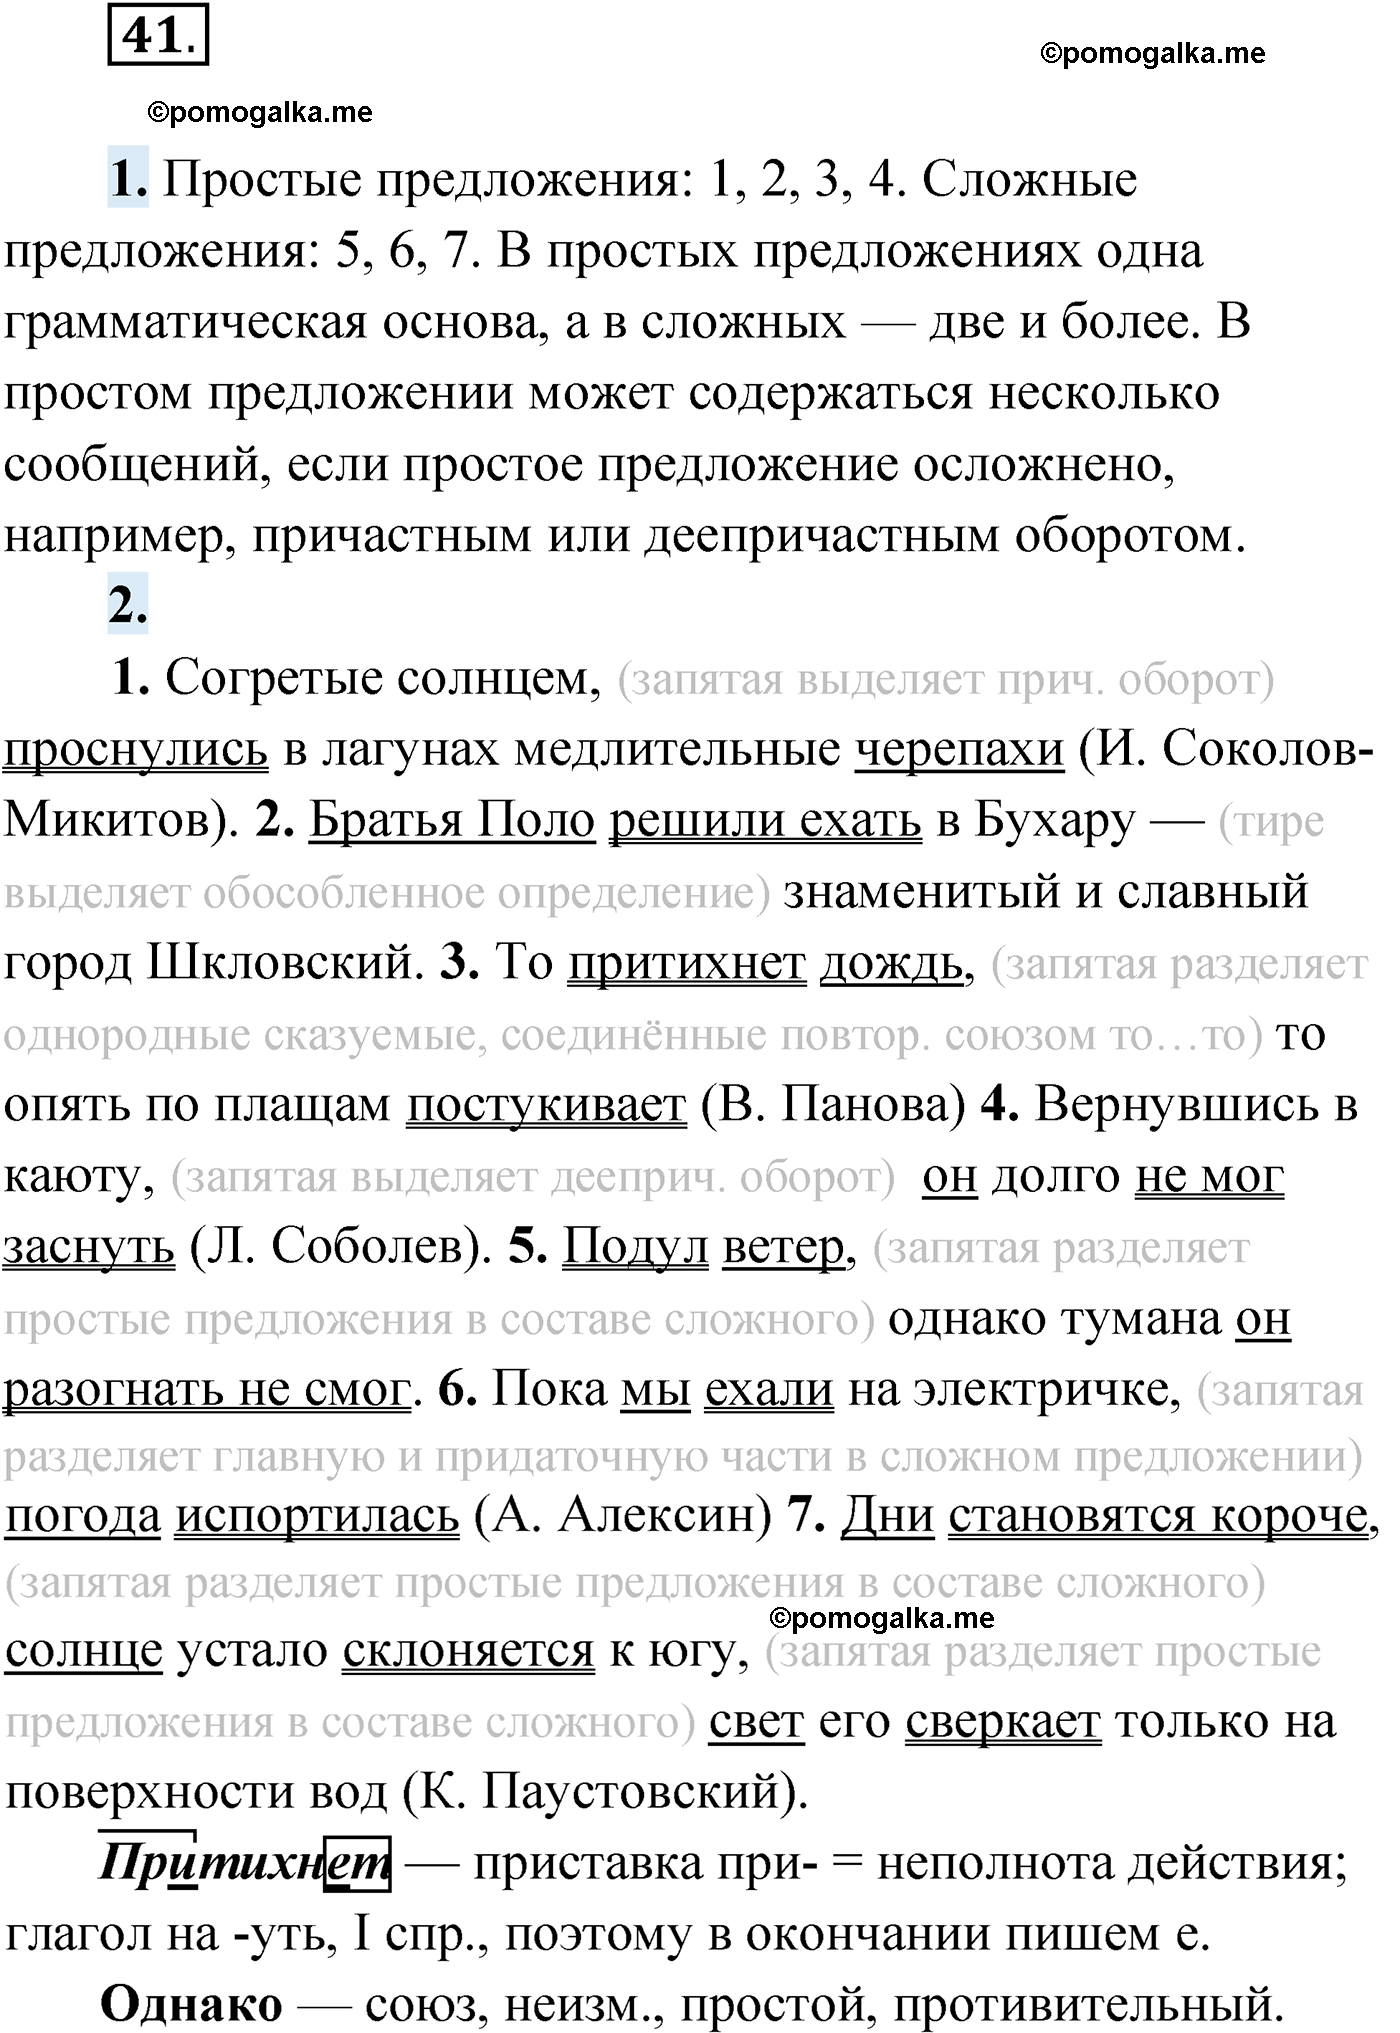 упражнение №41 русский язык 9 класс Мурина 2019 год